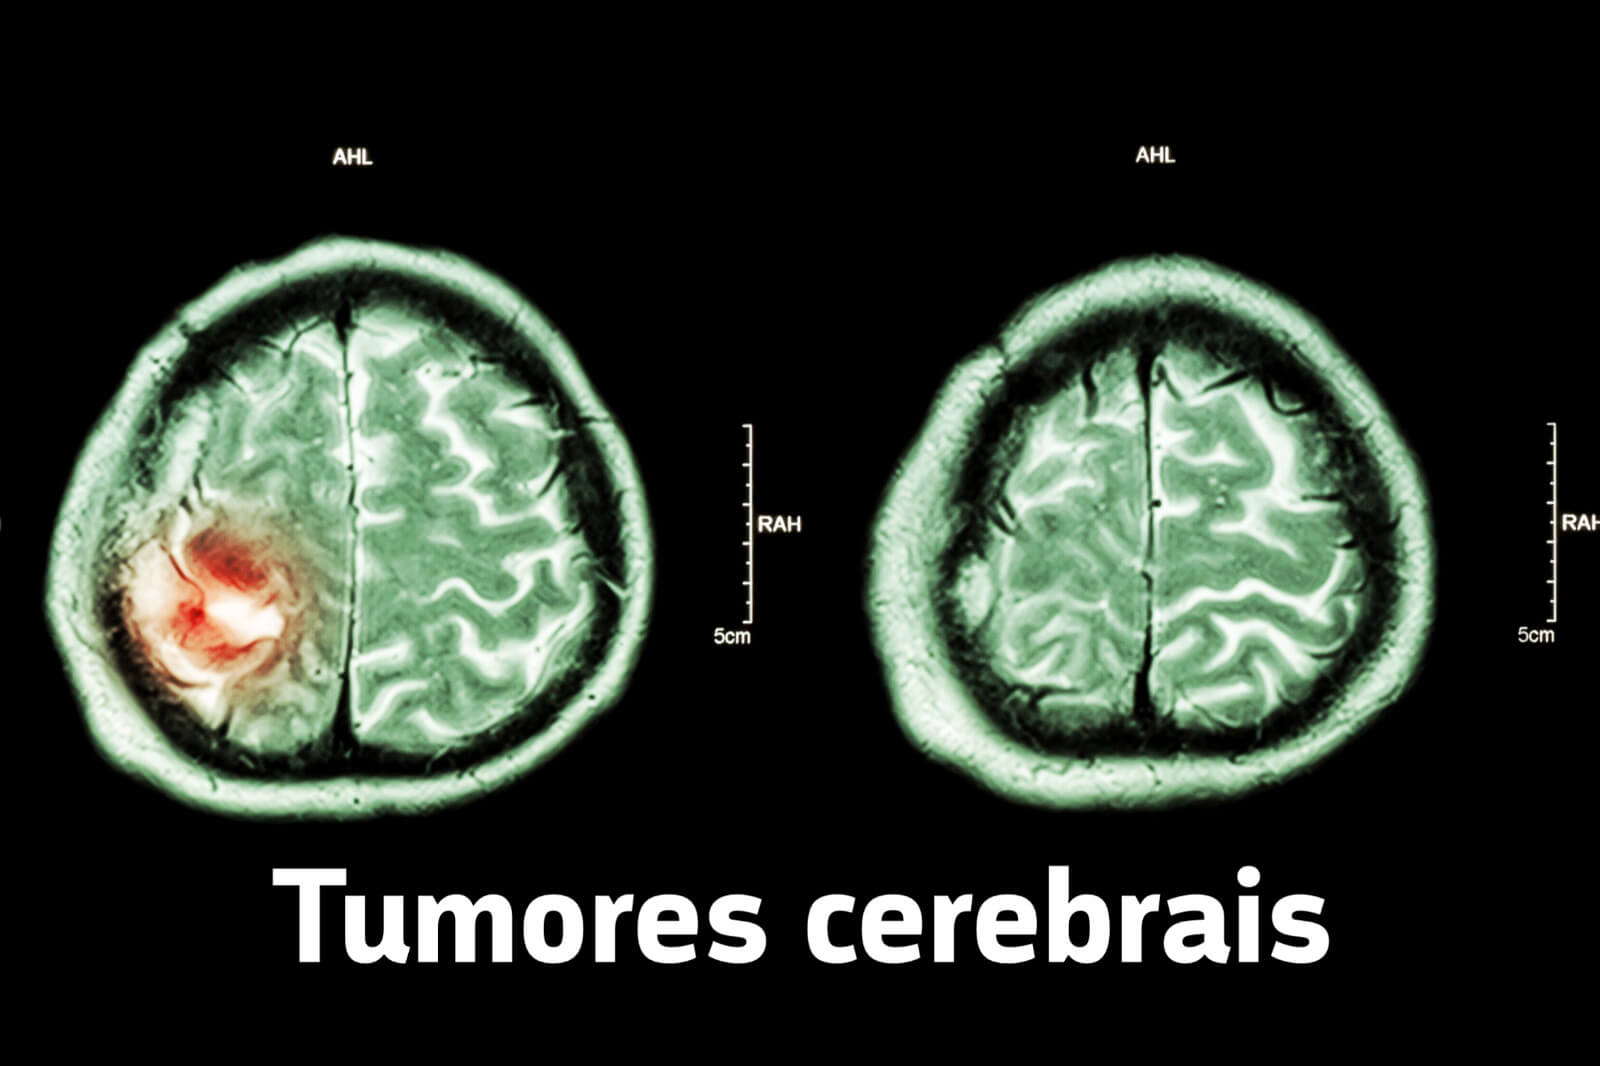 Tumores cerebrais